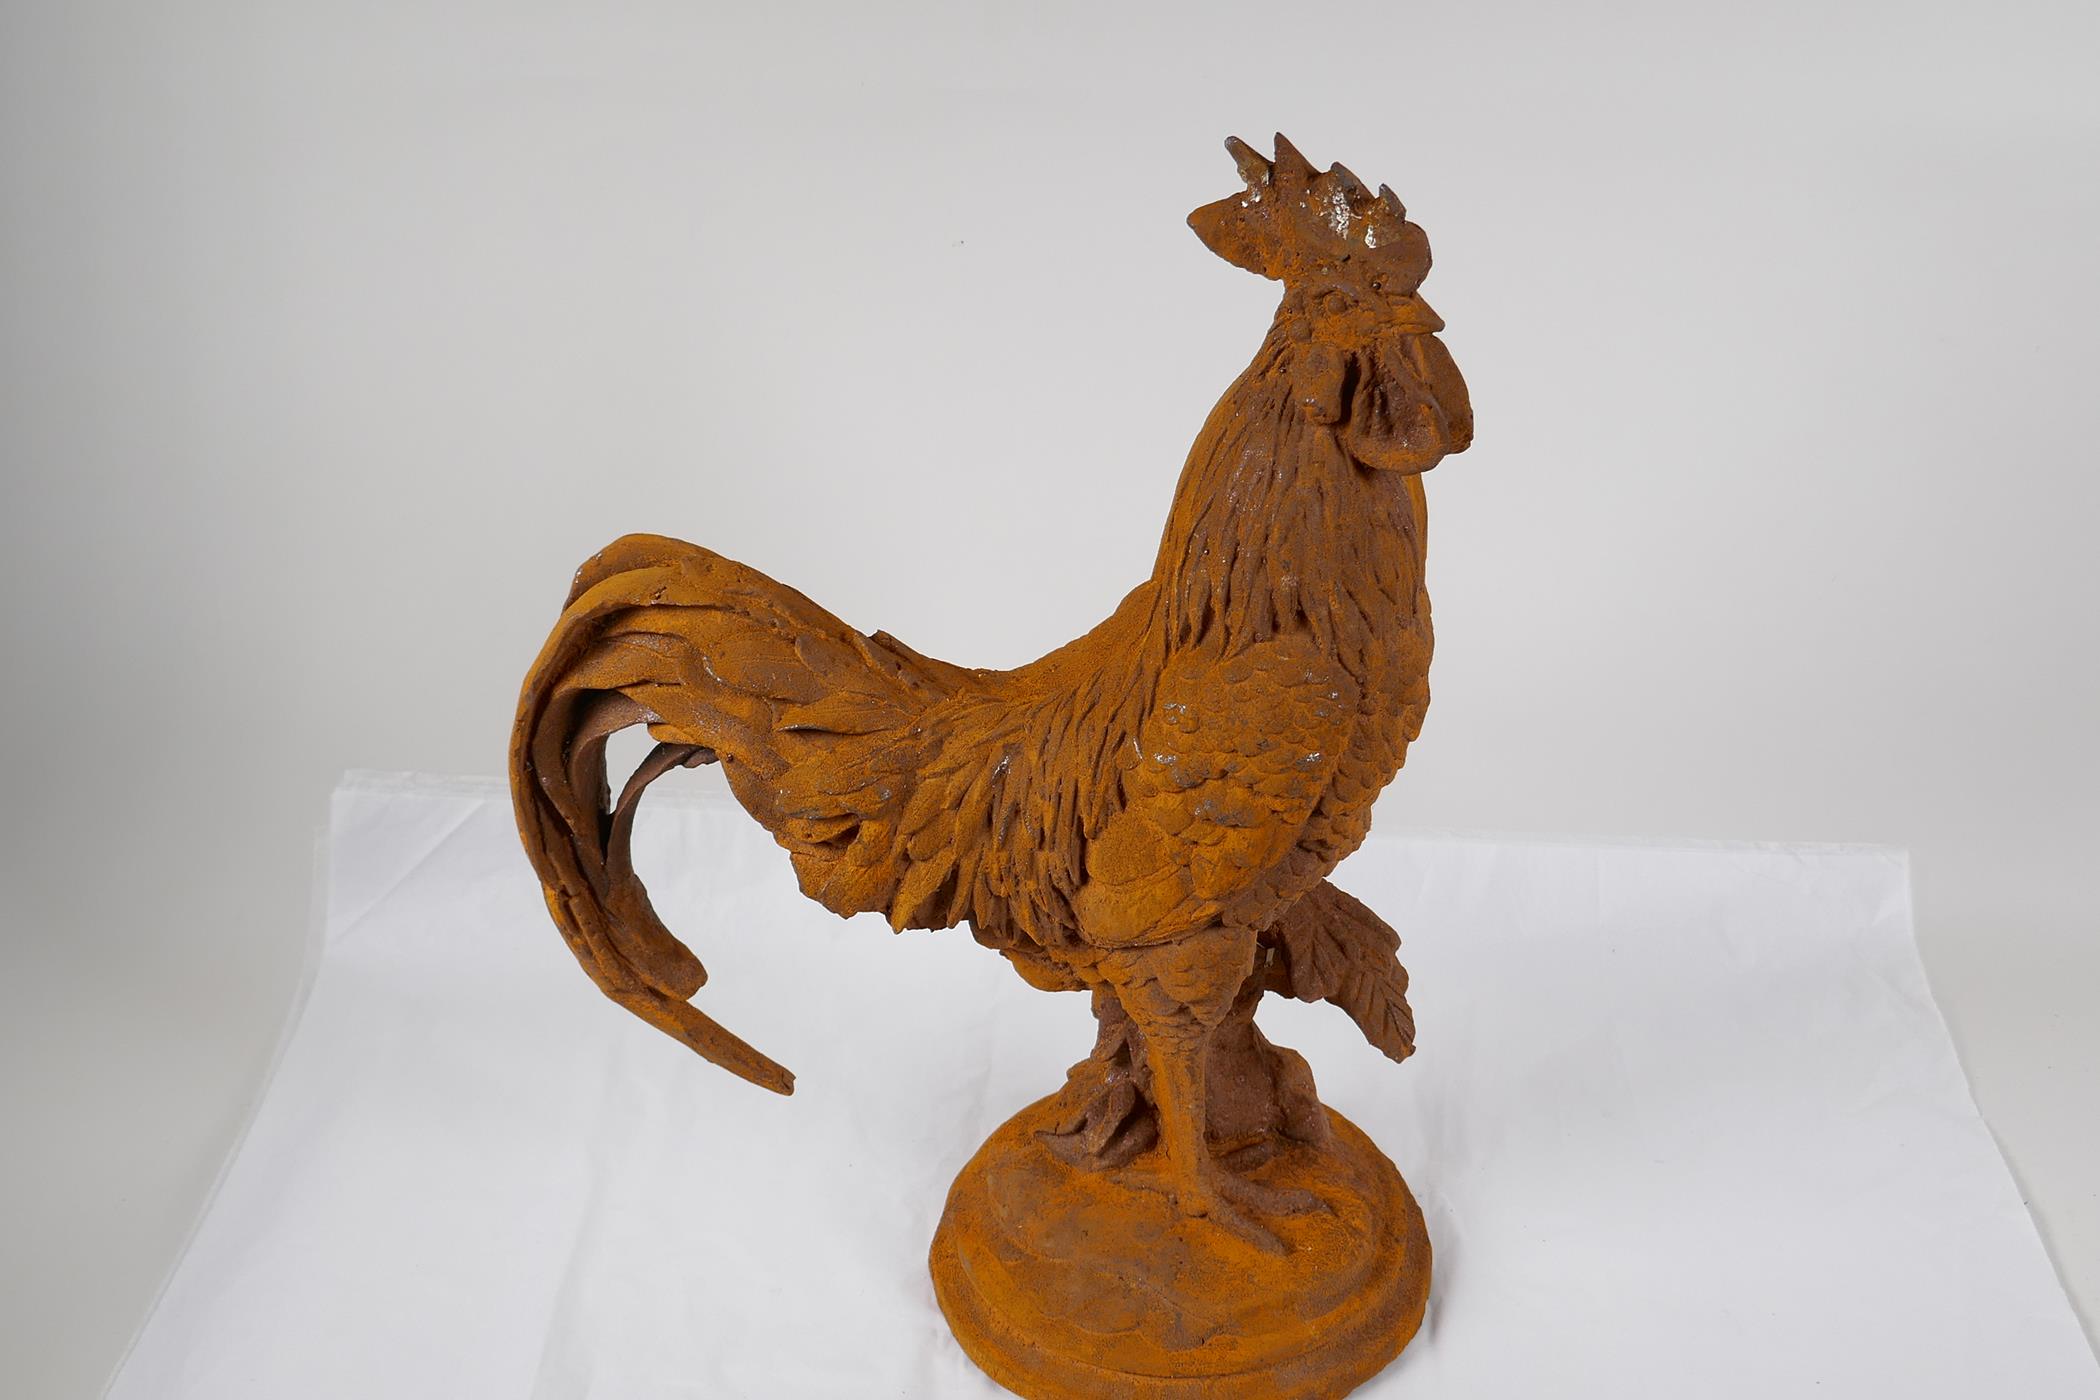 A cast iron garden figure of a cockerel, 17" high - Image 2 of 2